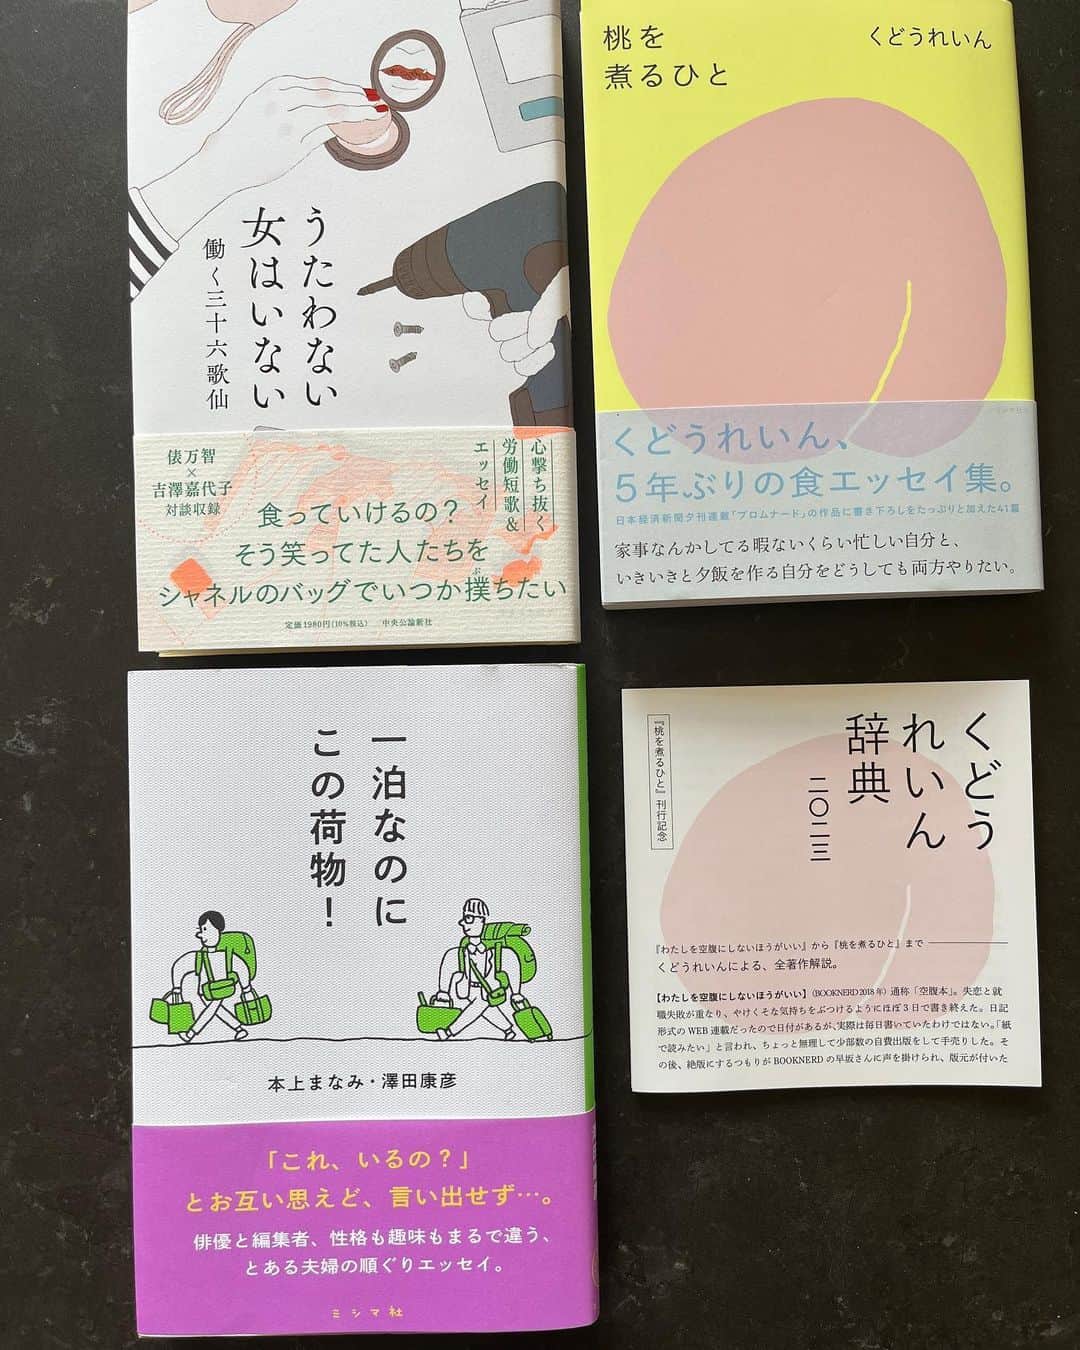 福田葉子のインスタグラム：「最近のサマーリーディング…夏も終わりですが。  「桃を煮るひと」くどうれいん　ミシマ社 「うたうおばけ」でファンになったくどうれいんさんの食エッセイ。とても素敵な文章の書き手。「くどうれいん辞典」という冊子が付いていて得した気分。「くどうれいんが何でも書けるところを見せつけないと」と担当編集者に言われてフード系ネタを封印されていたのか！解禁されて良かった。これからも楽しみ。  「うたわない女はいない」働く三十六歌仙　中央公論新社 働く歌人による、心撃ち抜く労働短歌集。女×仕事×短歌。  食っていけるの？　そう笑ってた人たちを　シャネルのバッグでいつか撲ちたい  辞めようと思うよなんてそんなこと　ラーメン二郎の前で言うなよ  華やかなファッション誌ゲラの束どさりと置く人の胸のよれたネクタイ  三つ目は校閲の仕事をしている歌人の歌。沁みる。  「一泊なのにこの荷物！」本上まなみ・澤田康彦　ミシマ社 タイトル買い。我が家と同じ。しょっちゅう旅に出ているくせに荷物多し。夫婦旅のあるあるが詰まってて笑ってしまう。吉祥寺にできた旅行本ばかり集めた本屋さん、街々書林で見つけて買いました。@machi2syorin  前の2冊は、渋奥の小さな名店の本屋さん、 Shibuya Publishing &Booksellers にて。 @spbs_tokyo  PL病院で人間ドック受診したら必ず寄る書店。とてつもなく選書が素晴らしい。本棚ごと買って帰りたくなる。とても気の合う本屋さん、貴重です。本も出合いだと思う。 #本　#本好き　#読書　#本屋さん　#作家　#歌人　#くどうれいん　#桃を煮るひと #うたうおばけ　#ミシマ社 #うたわない女はいない　#中央公論新社 #一泊なのにこの荷物 #本上まなみ　#澤田康彦　#街々書林 #吉祥寺　#旅行本　#book #booklover #reading #summerreading #fun #love  #shibuyapublishingbooksellers」